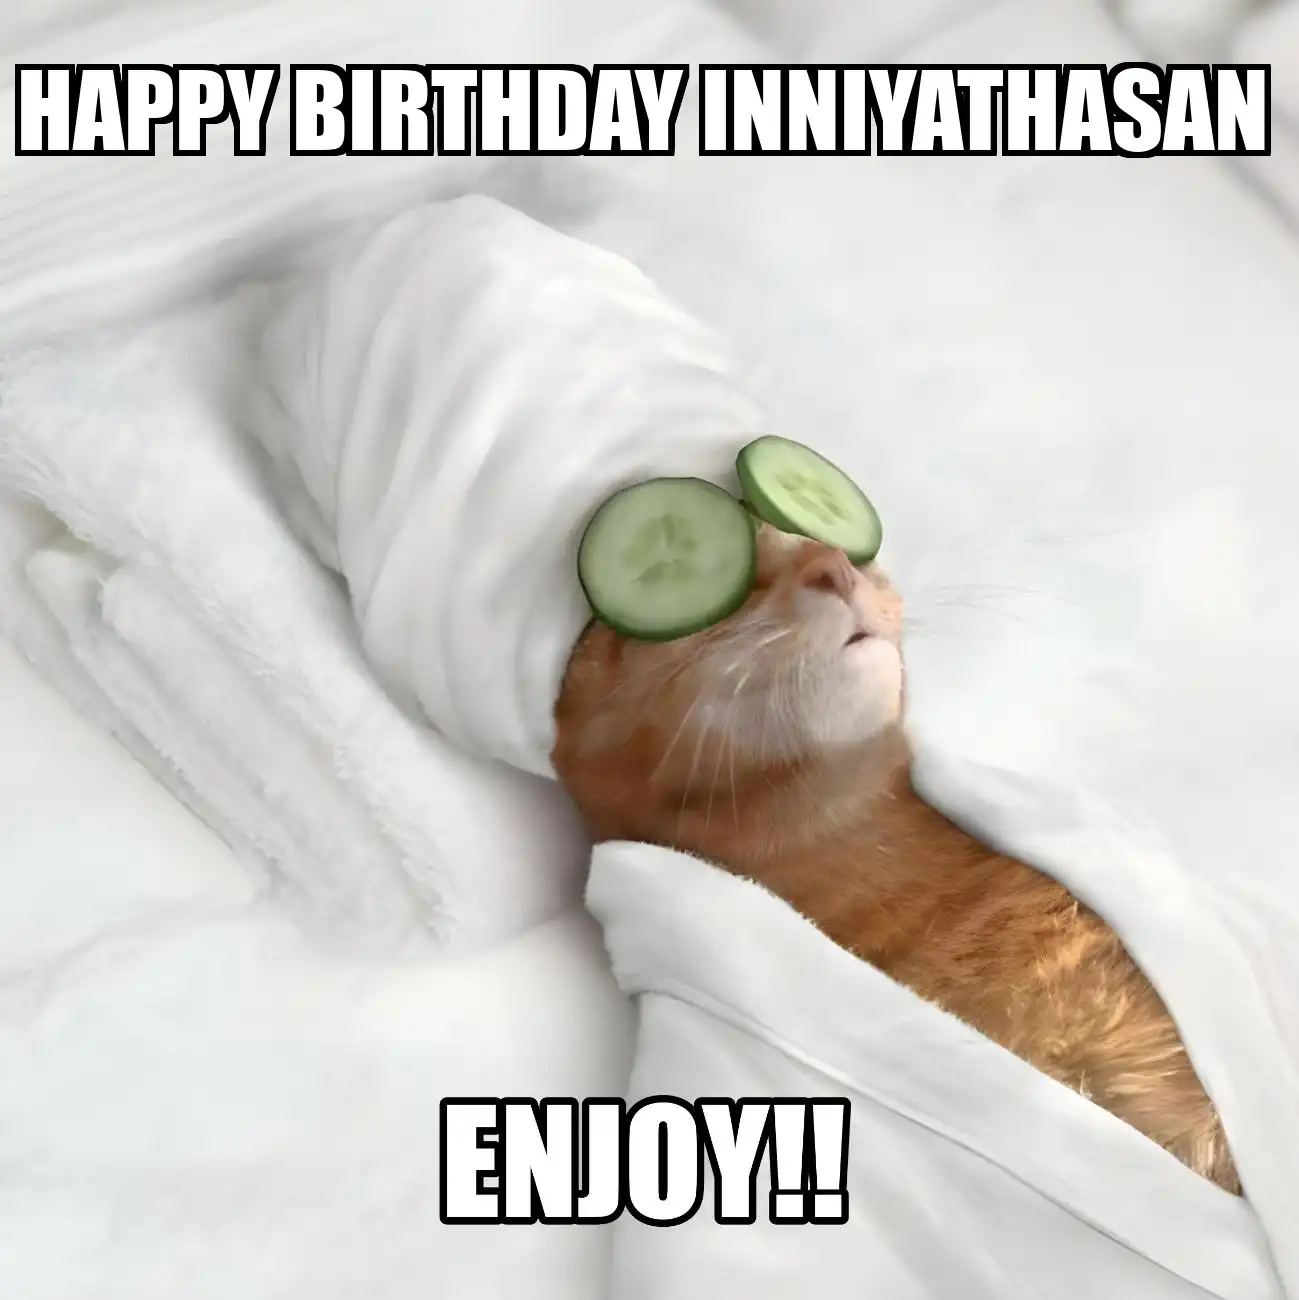 Happy Birthday Inniyathasan Enjoy Cat Meme